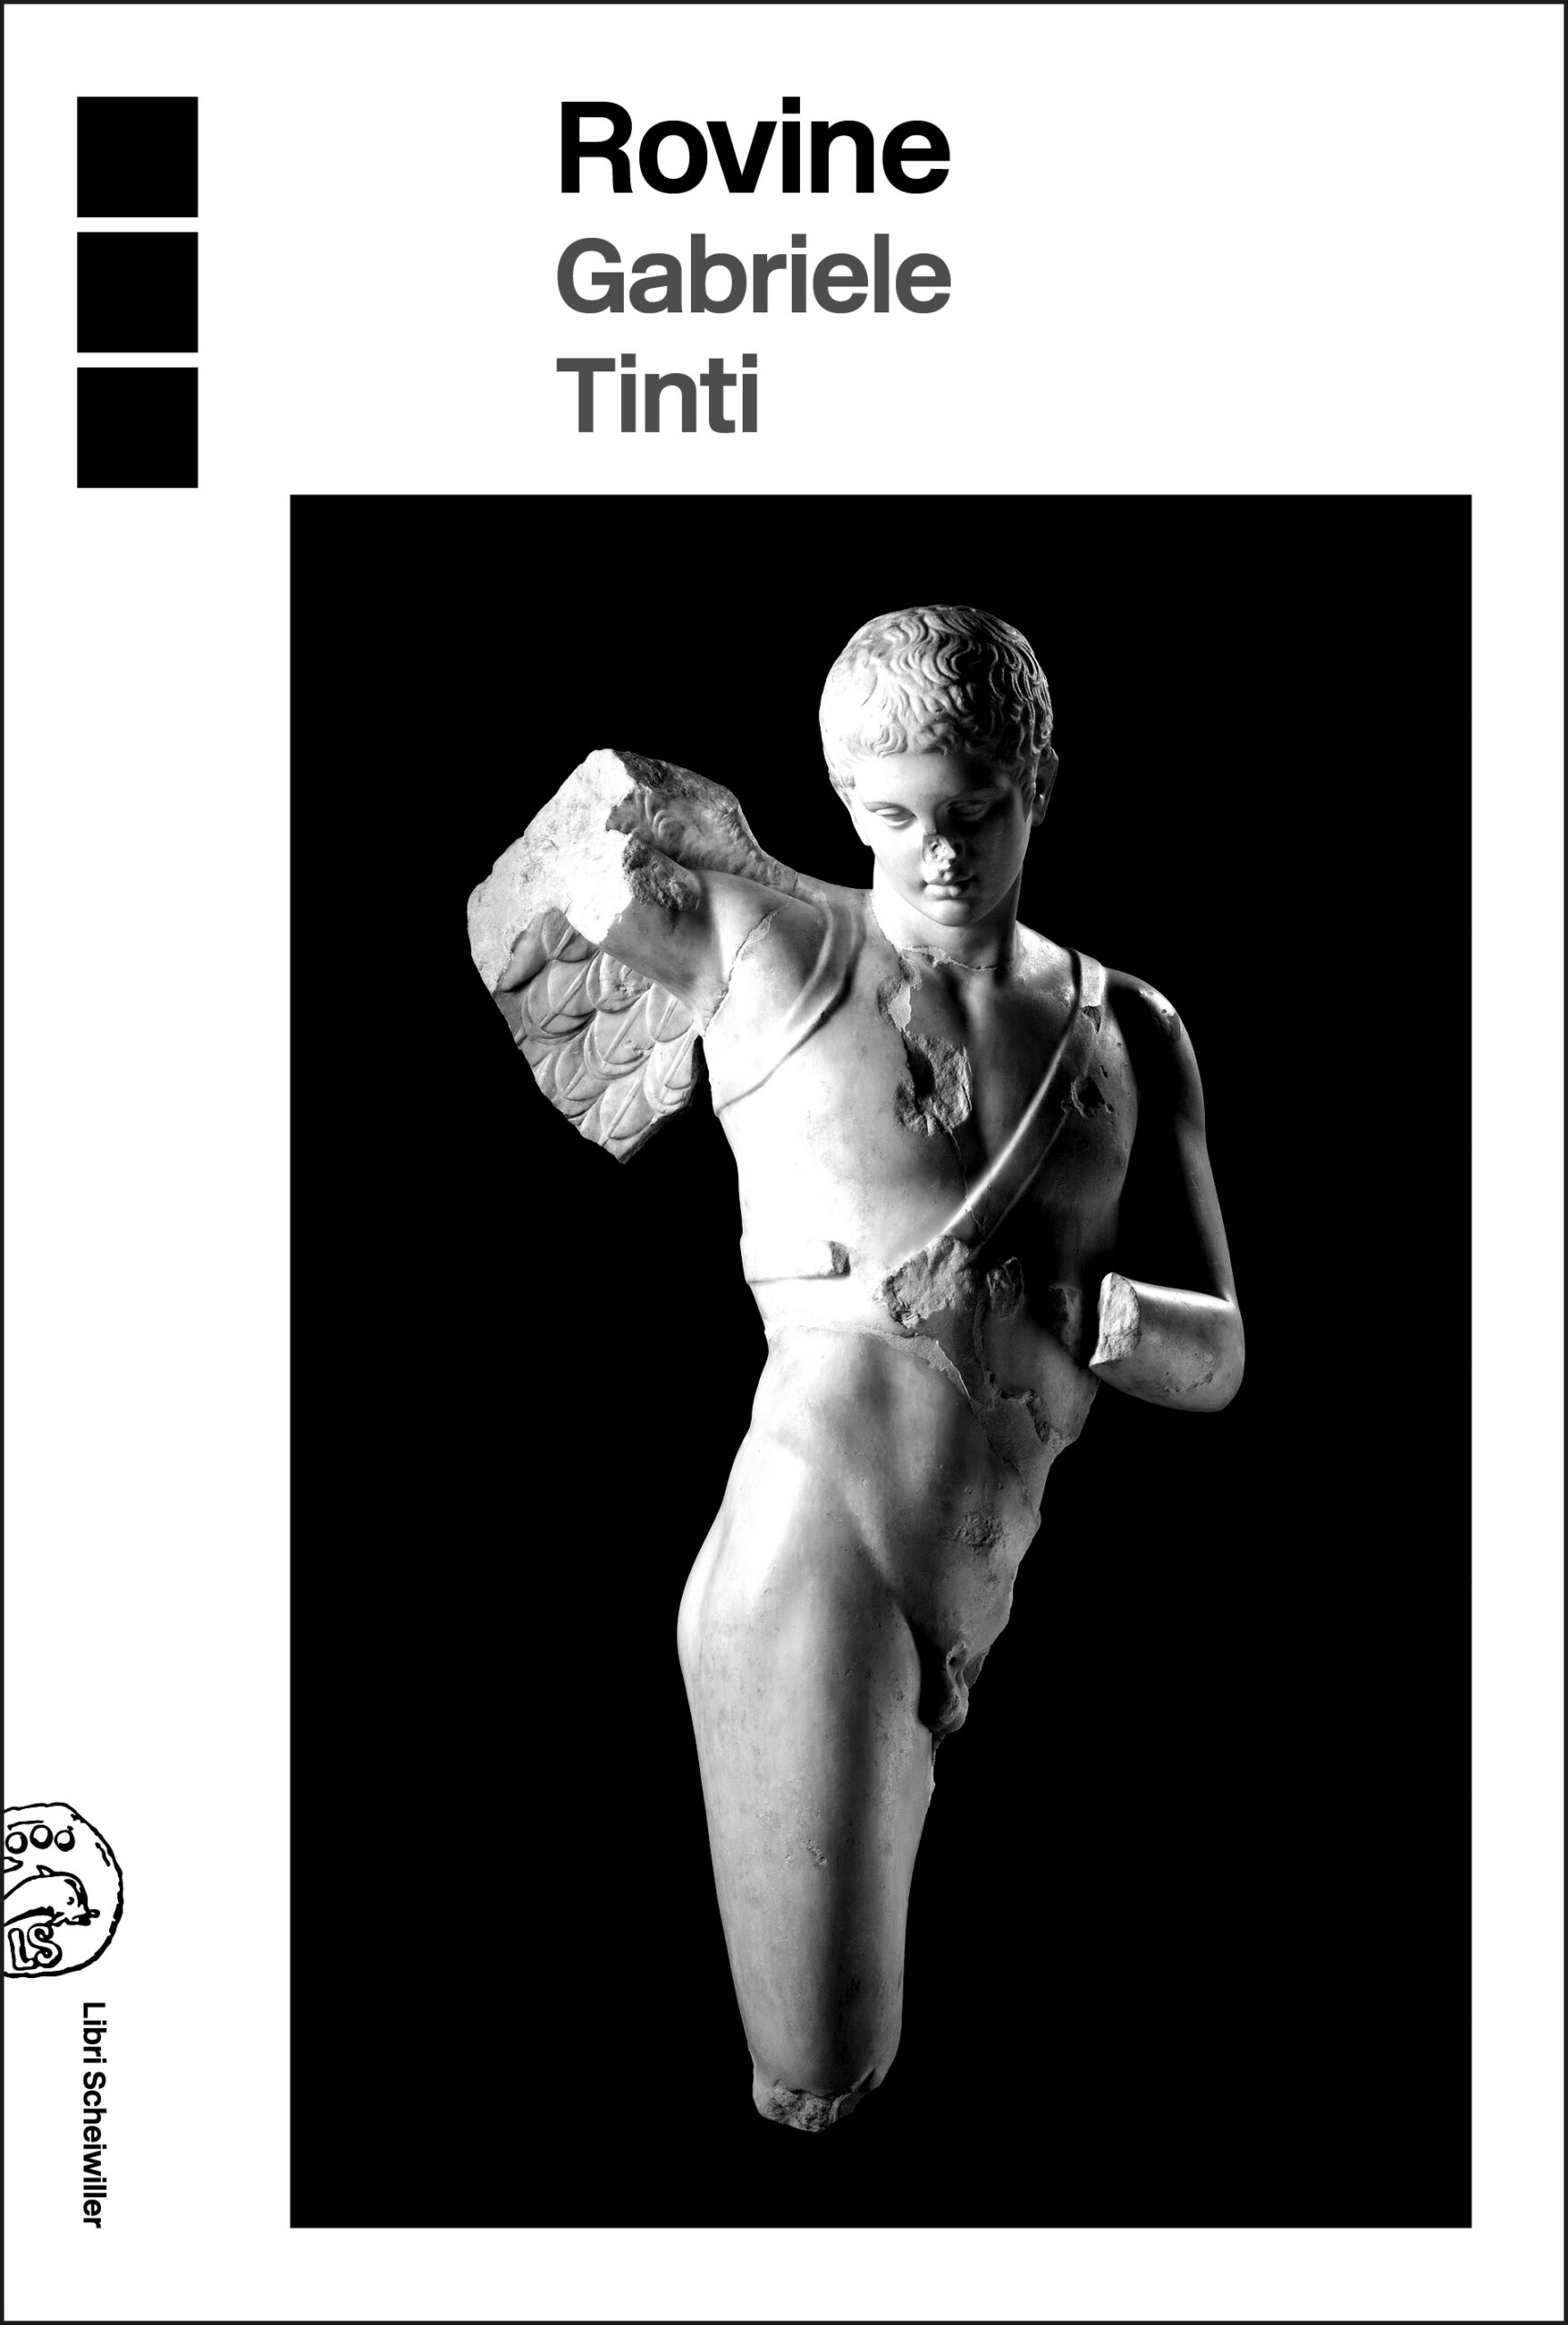 <strong>Abel Ferrara legge “Rovine” di Gabriele Tinti, una raccolta di poesie </strong>